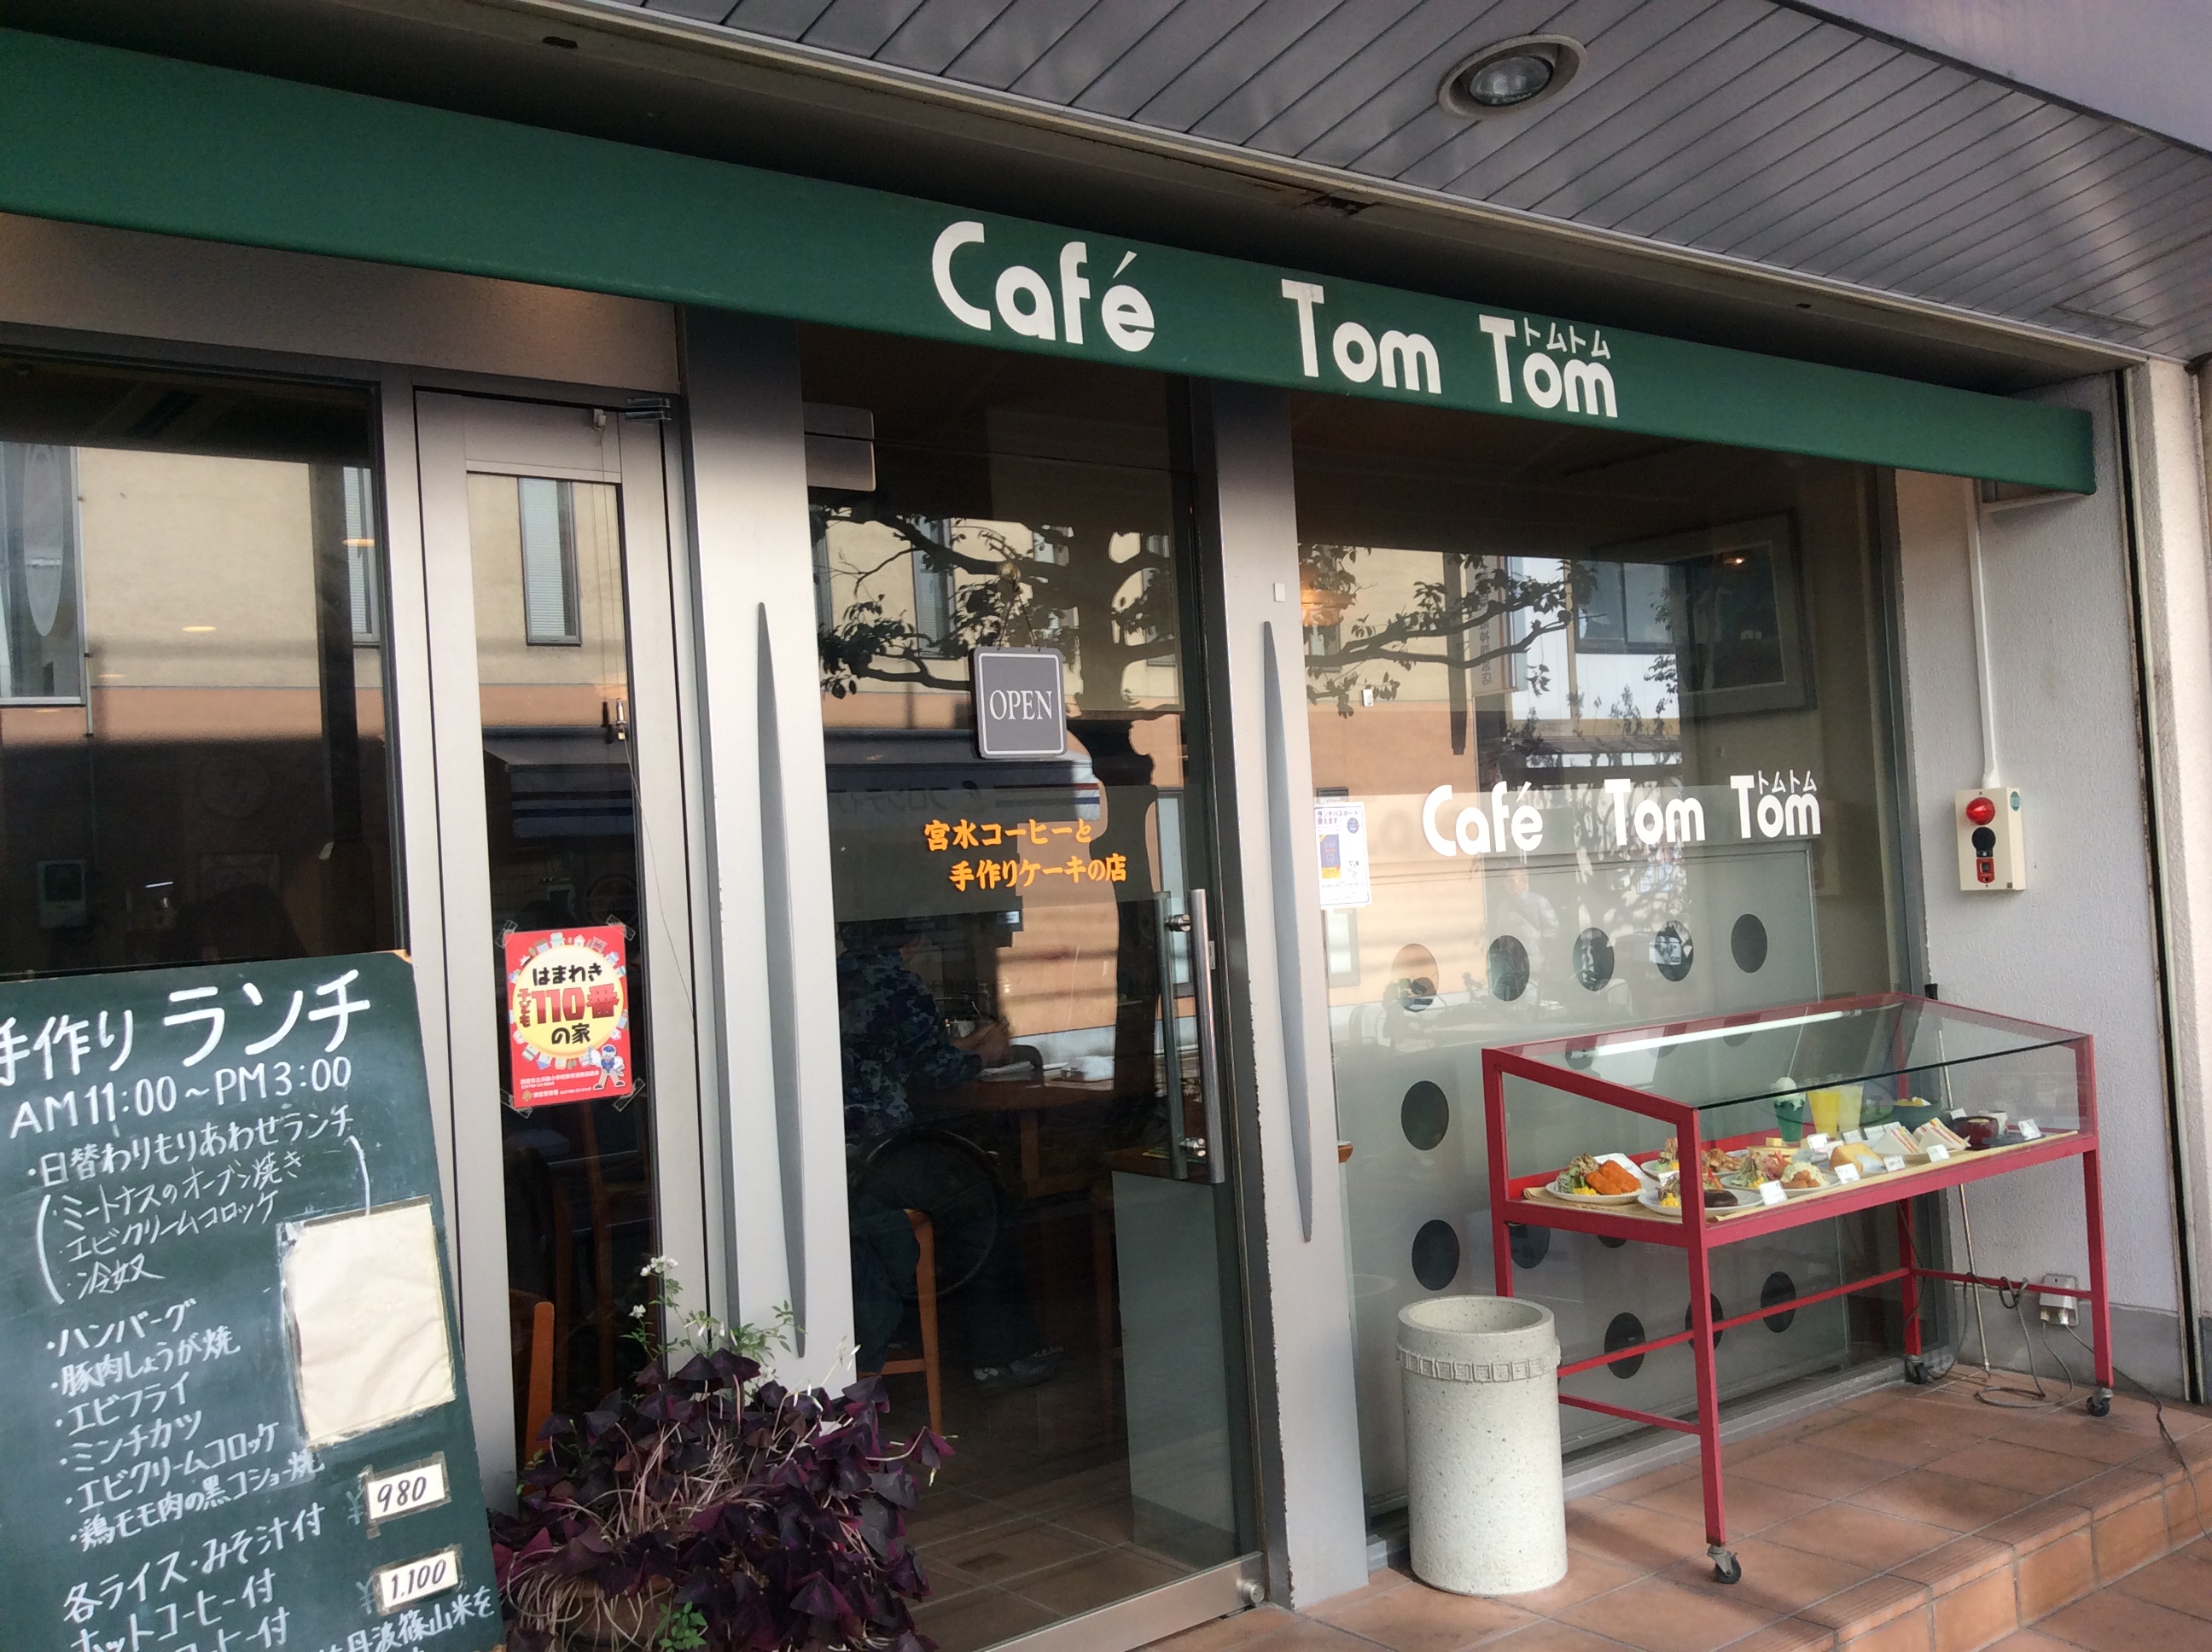 Cafe Tom Tom